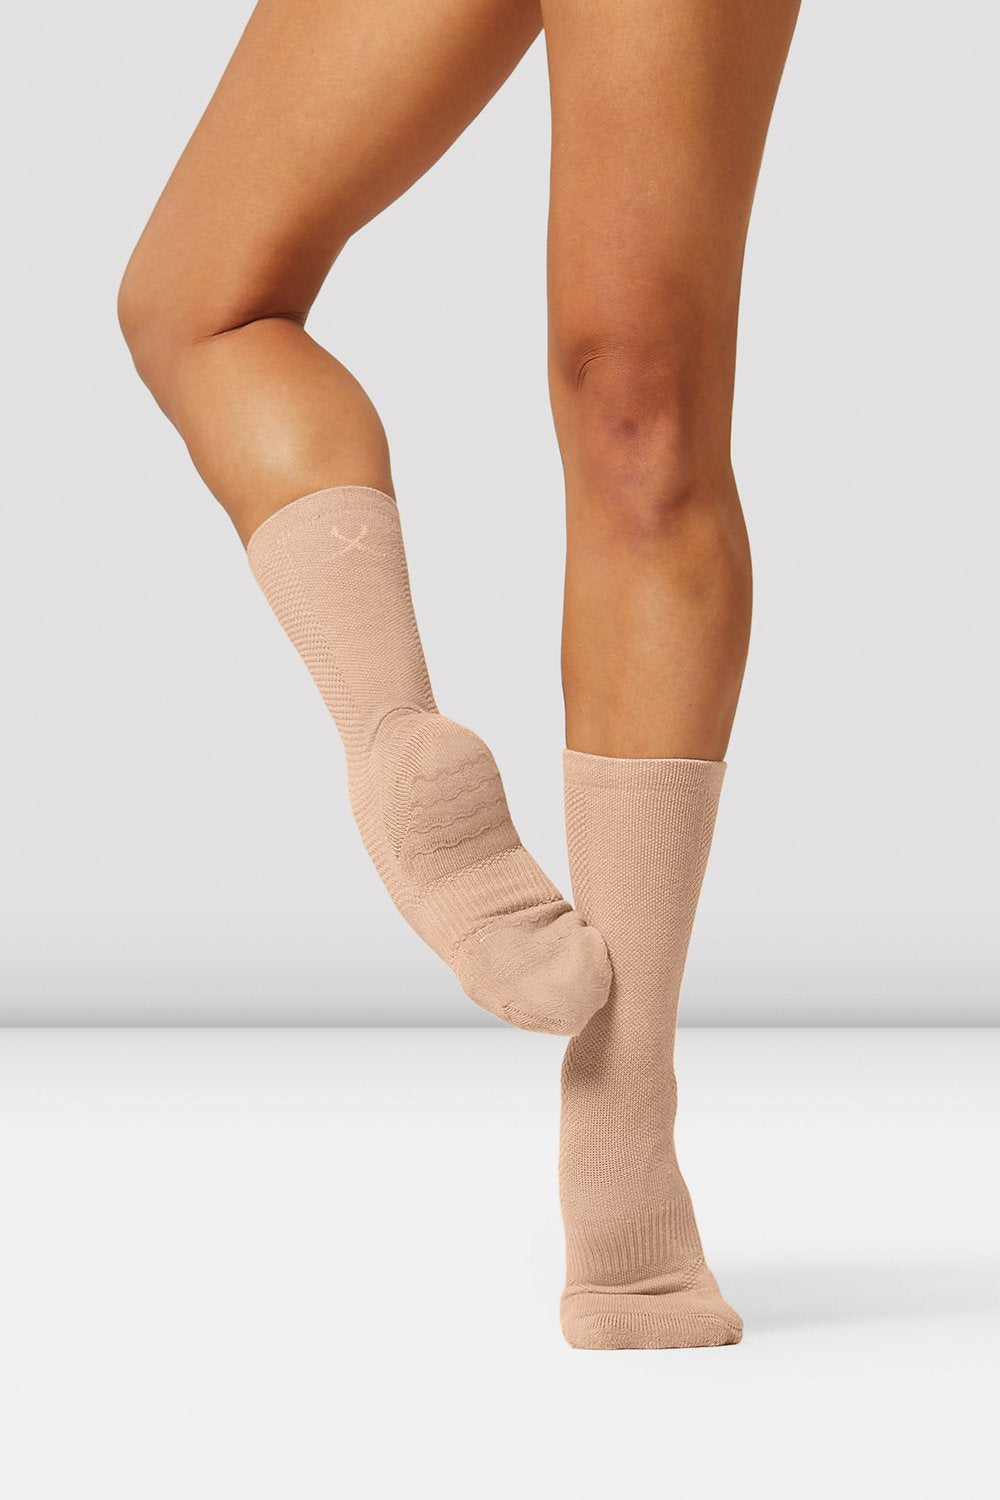 Bloch Socks Nude – The Dance Shop